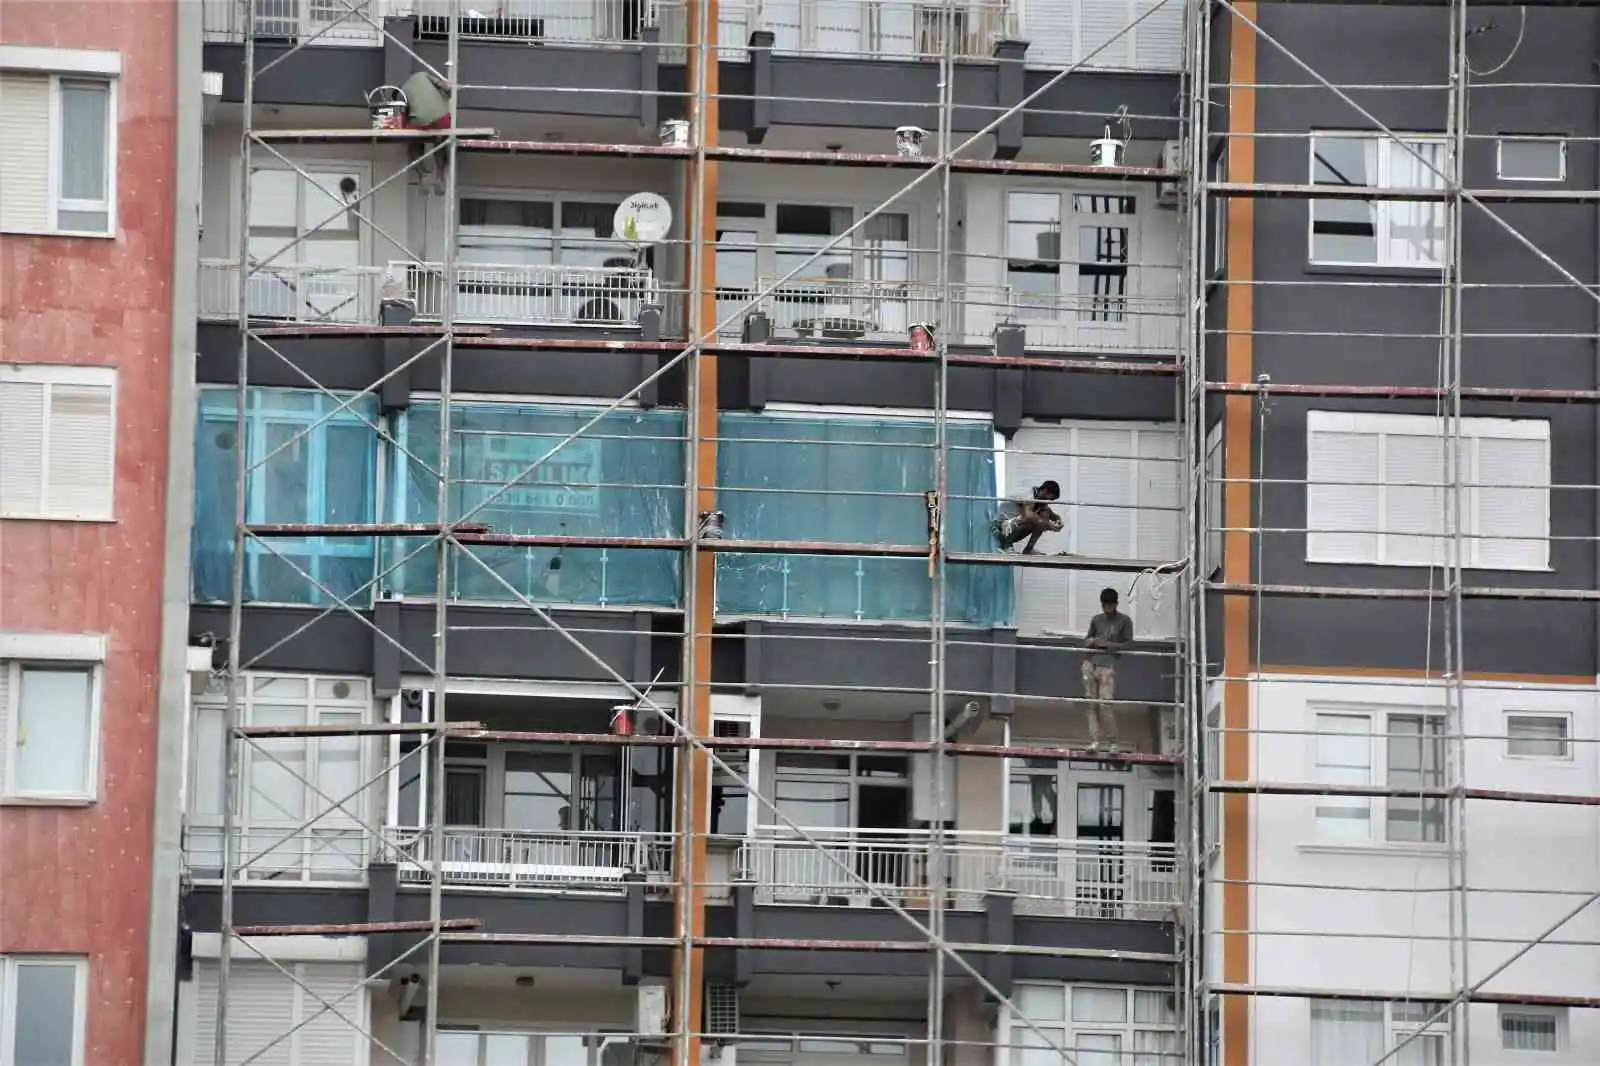 İnşaat işçilerinin 15 katlı binada güvenlik önlemi olmadan çalışmaları yürekleri ağza getirdi
